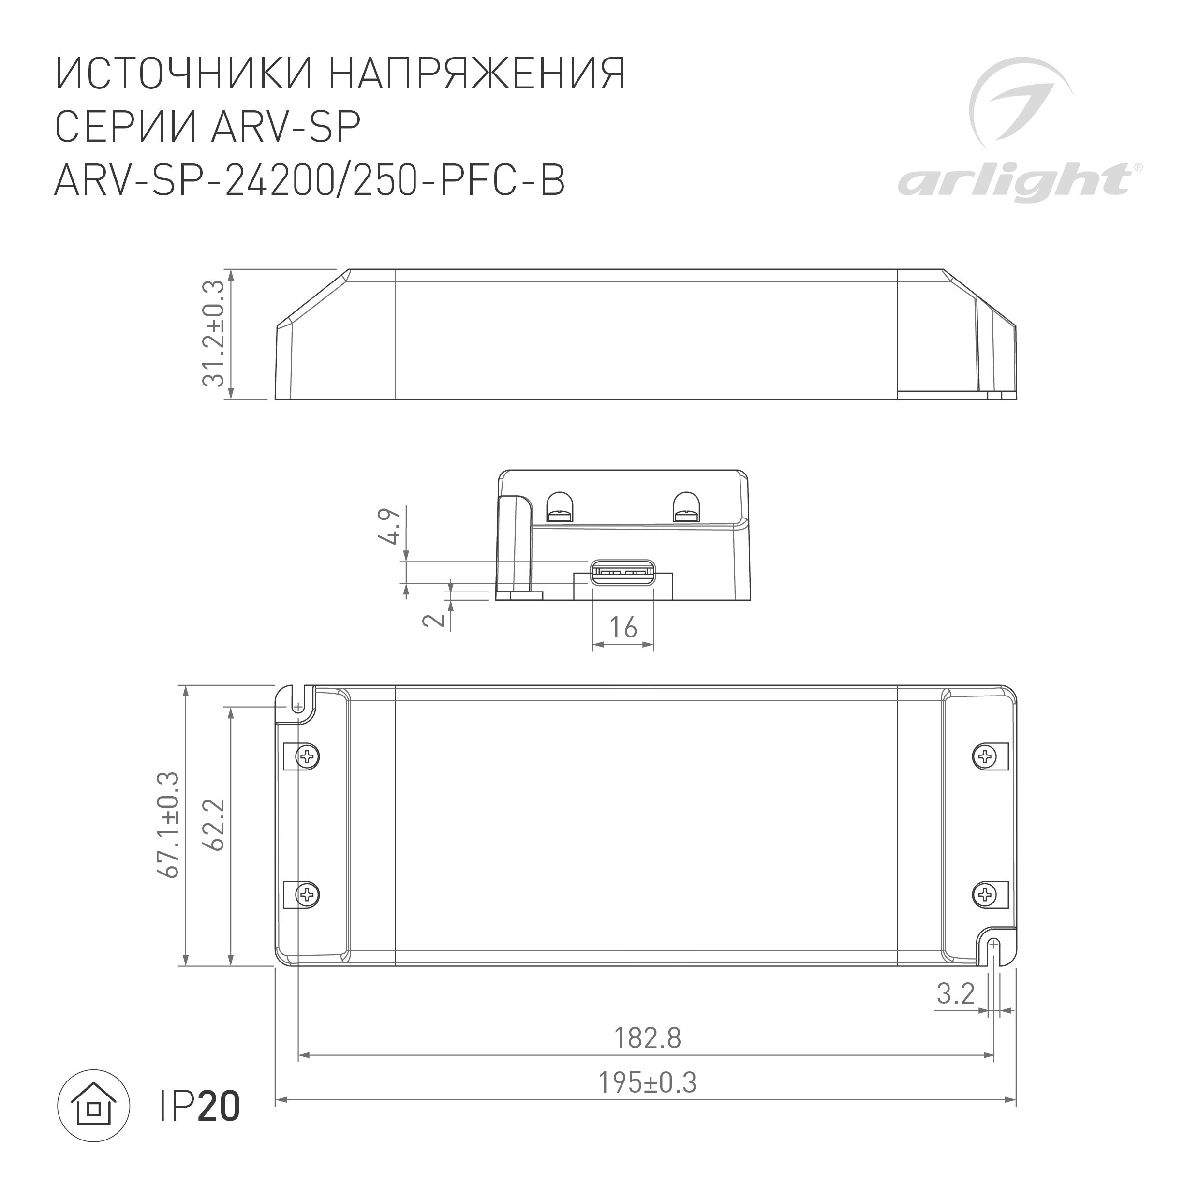 Блок питания Arlight ARV-SP-24250-PFC-B (24V, 10.4A, 250W, IP20) 022923(2)